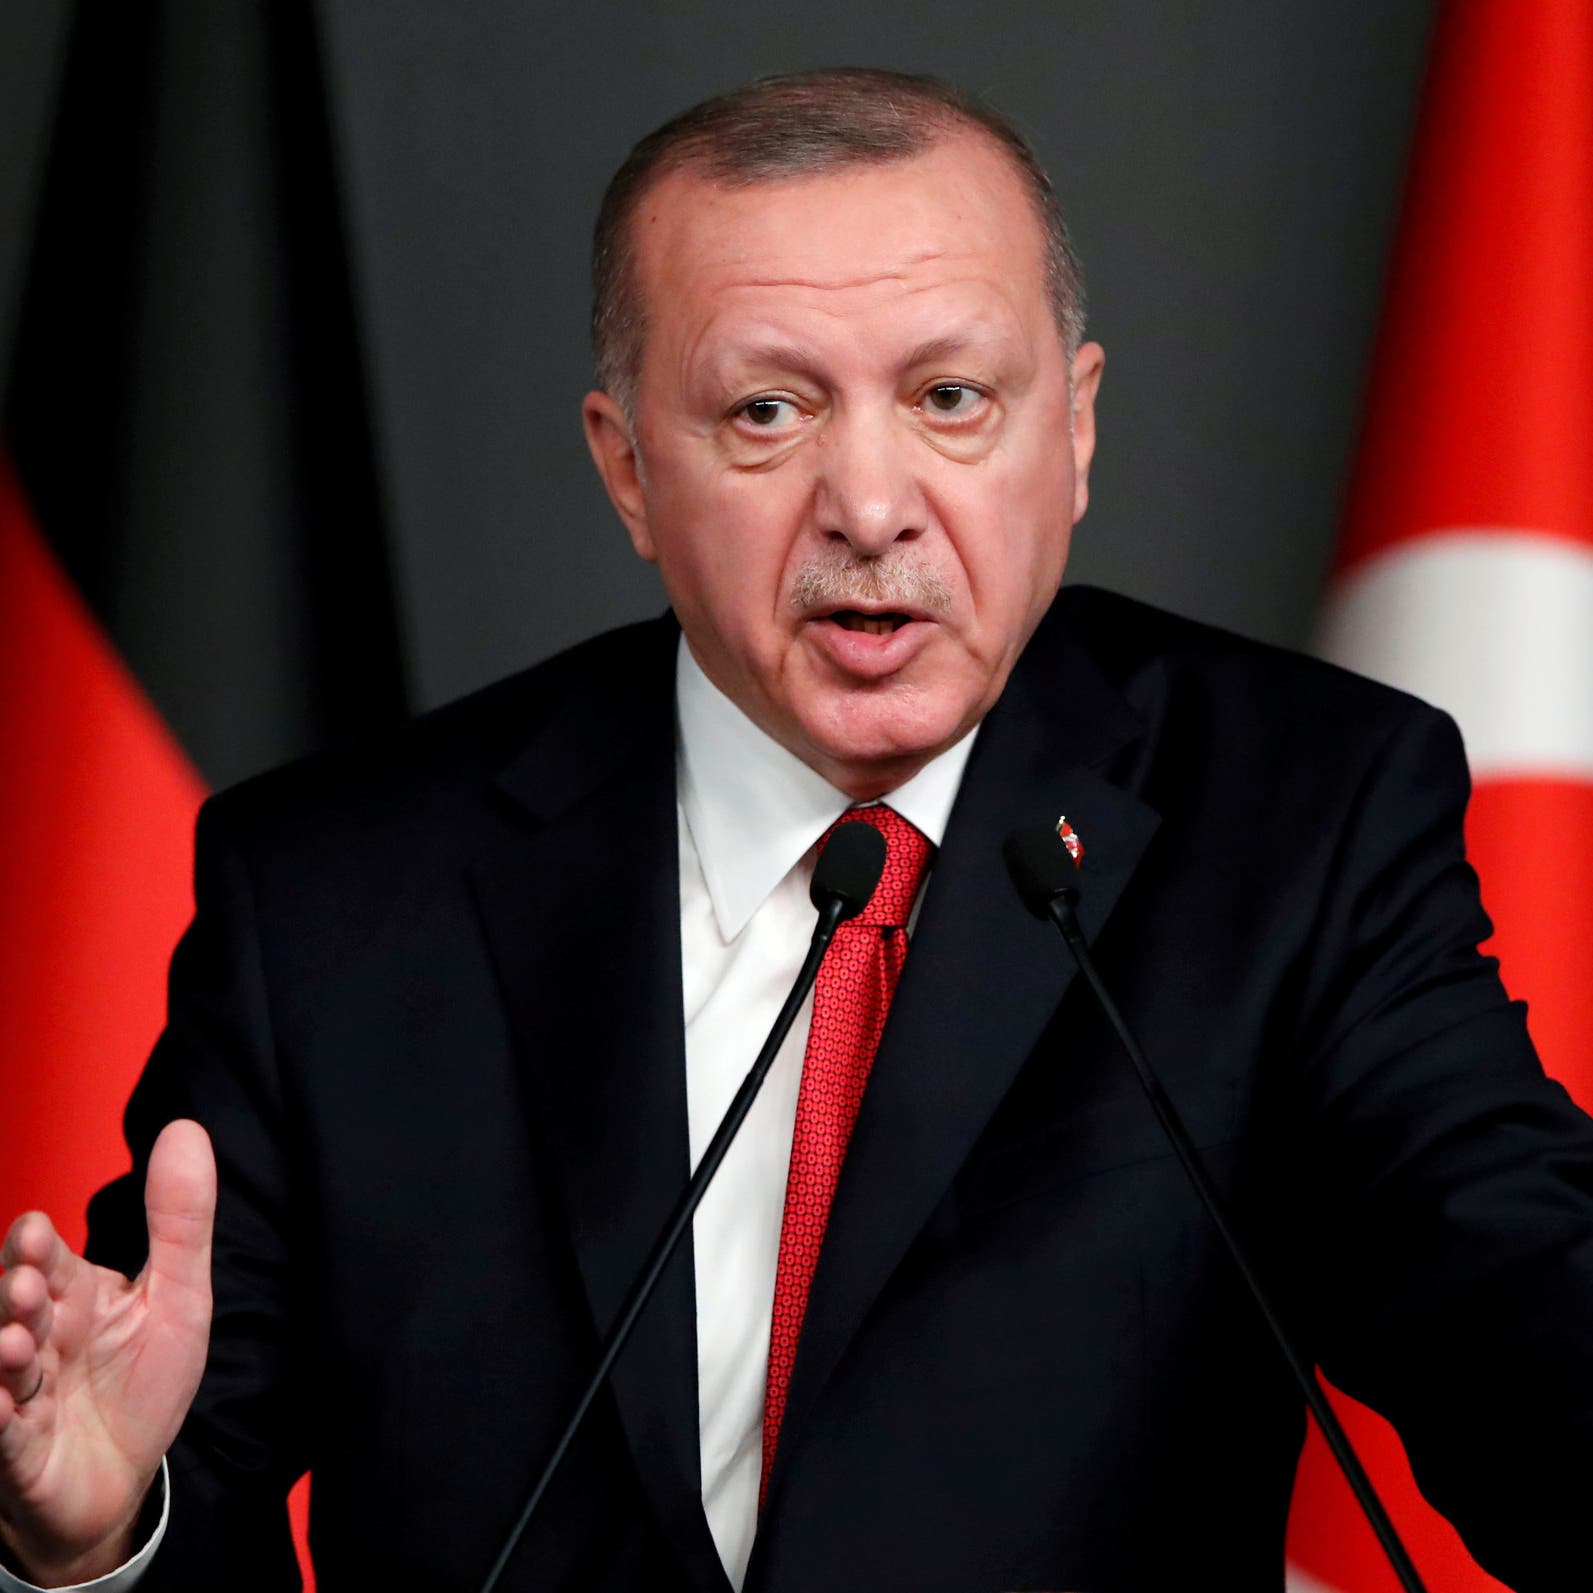 أردوغان يغض البصر عن الموالين ويوقف إعلام المعارضة